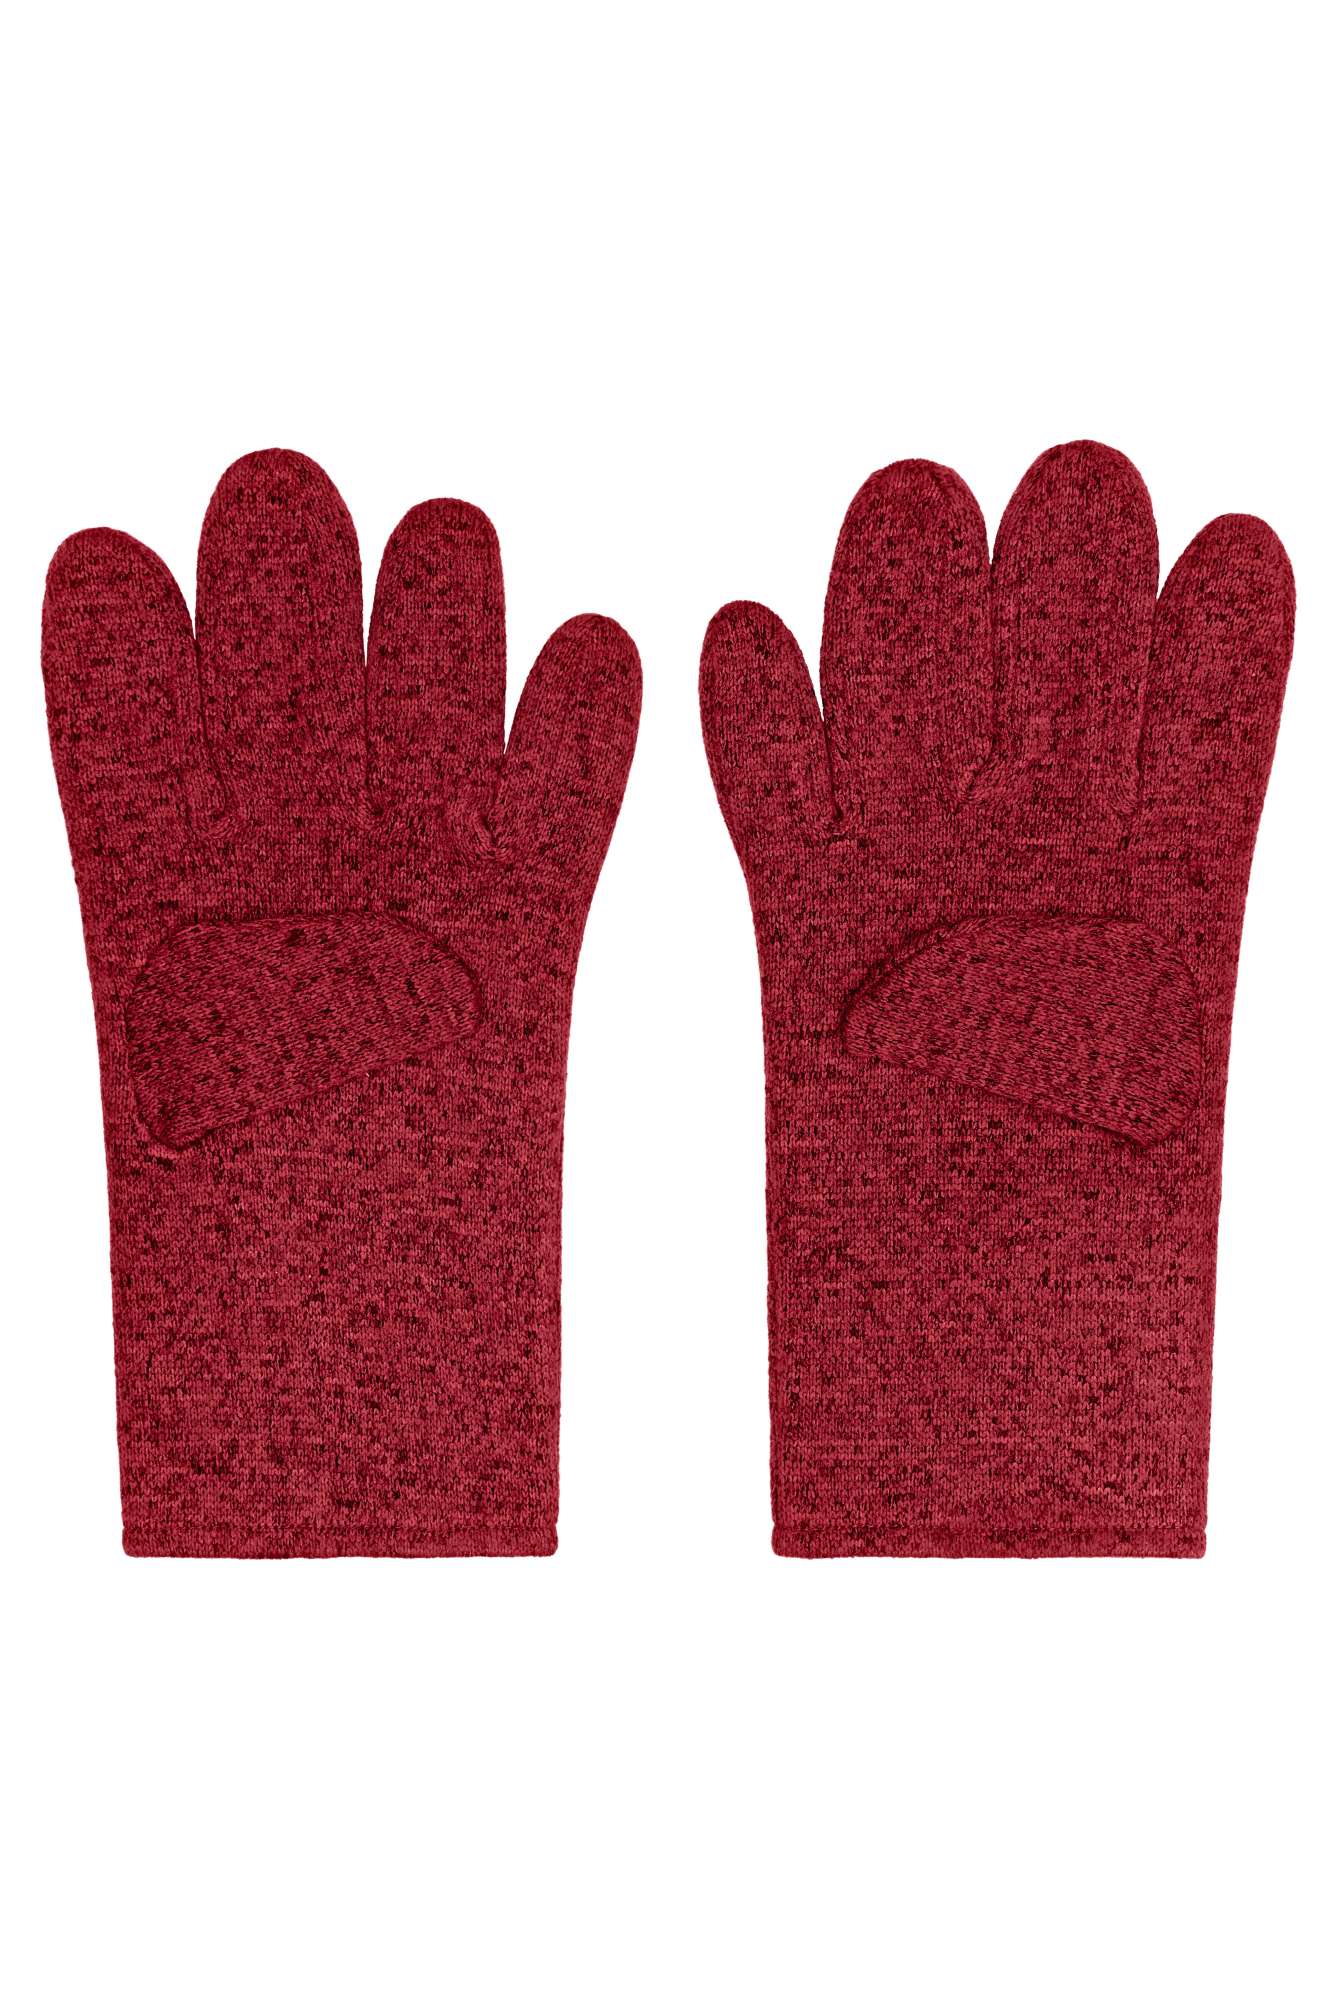 Myrtle beach Fleece-Gloves Royal Melange S/M (MB7402)